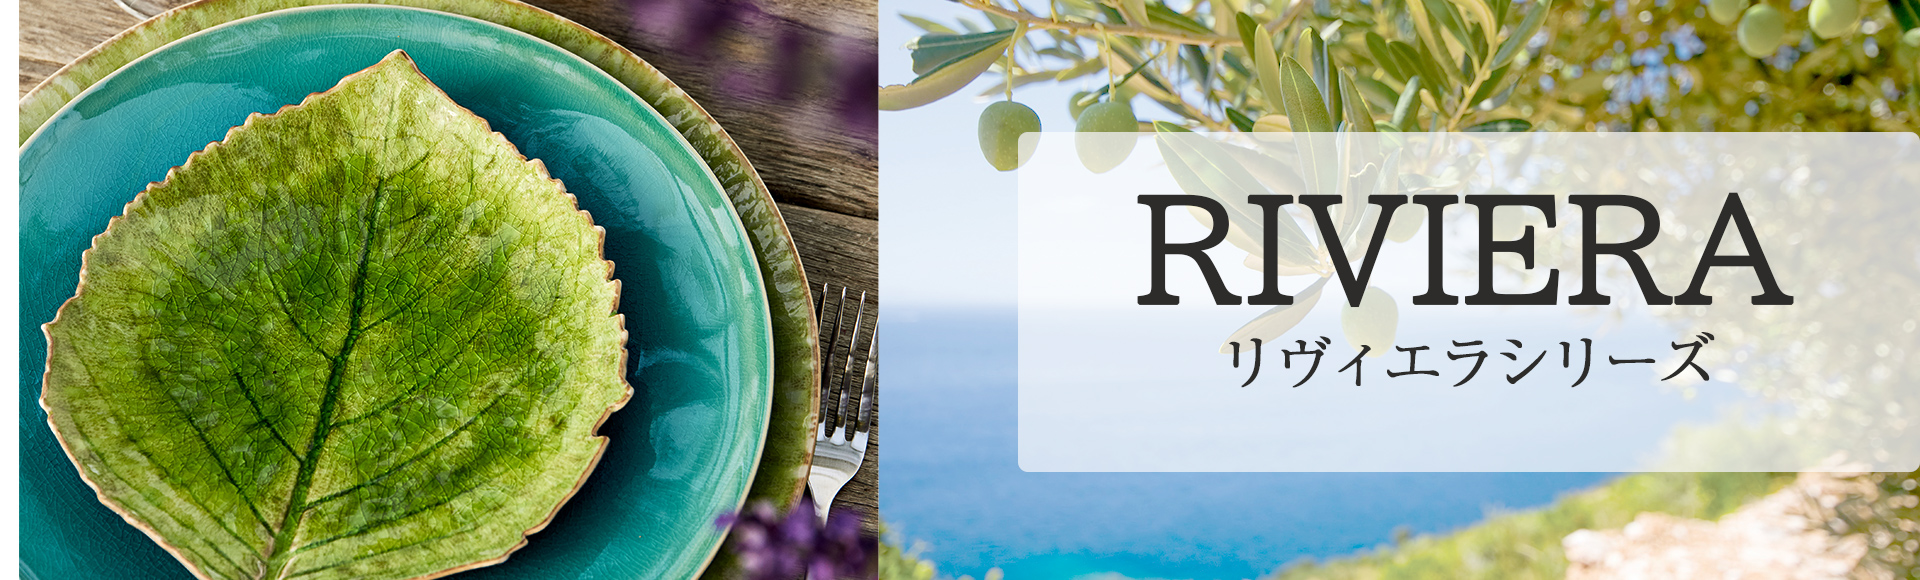 フラワーアーティストのクリスチャン・トルチュプロデュースの食器、リビエラ。地中海のリゾート地リビエラの、海、光あふれる空や緑の色やモチーフを取り入れた個性的な食器。